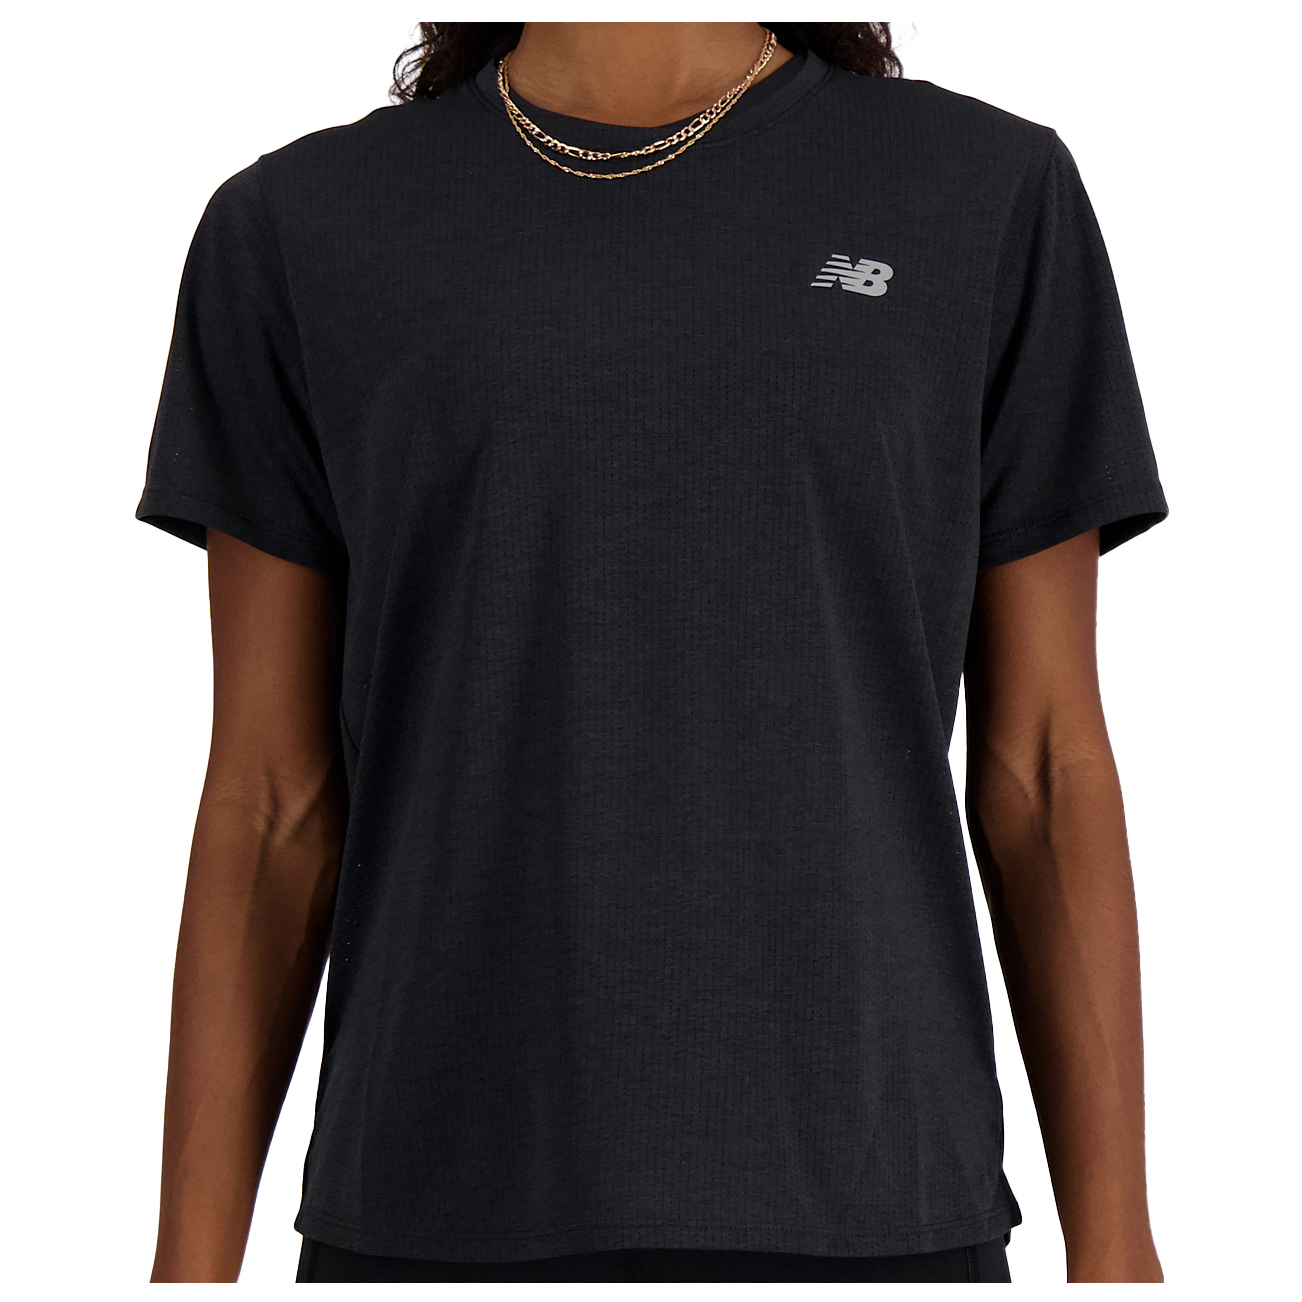 Беговая рубашка New Balance Women's Athletics S/S, цвет Black Heat